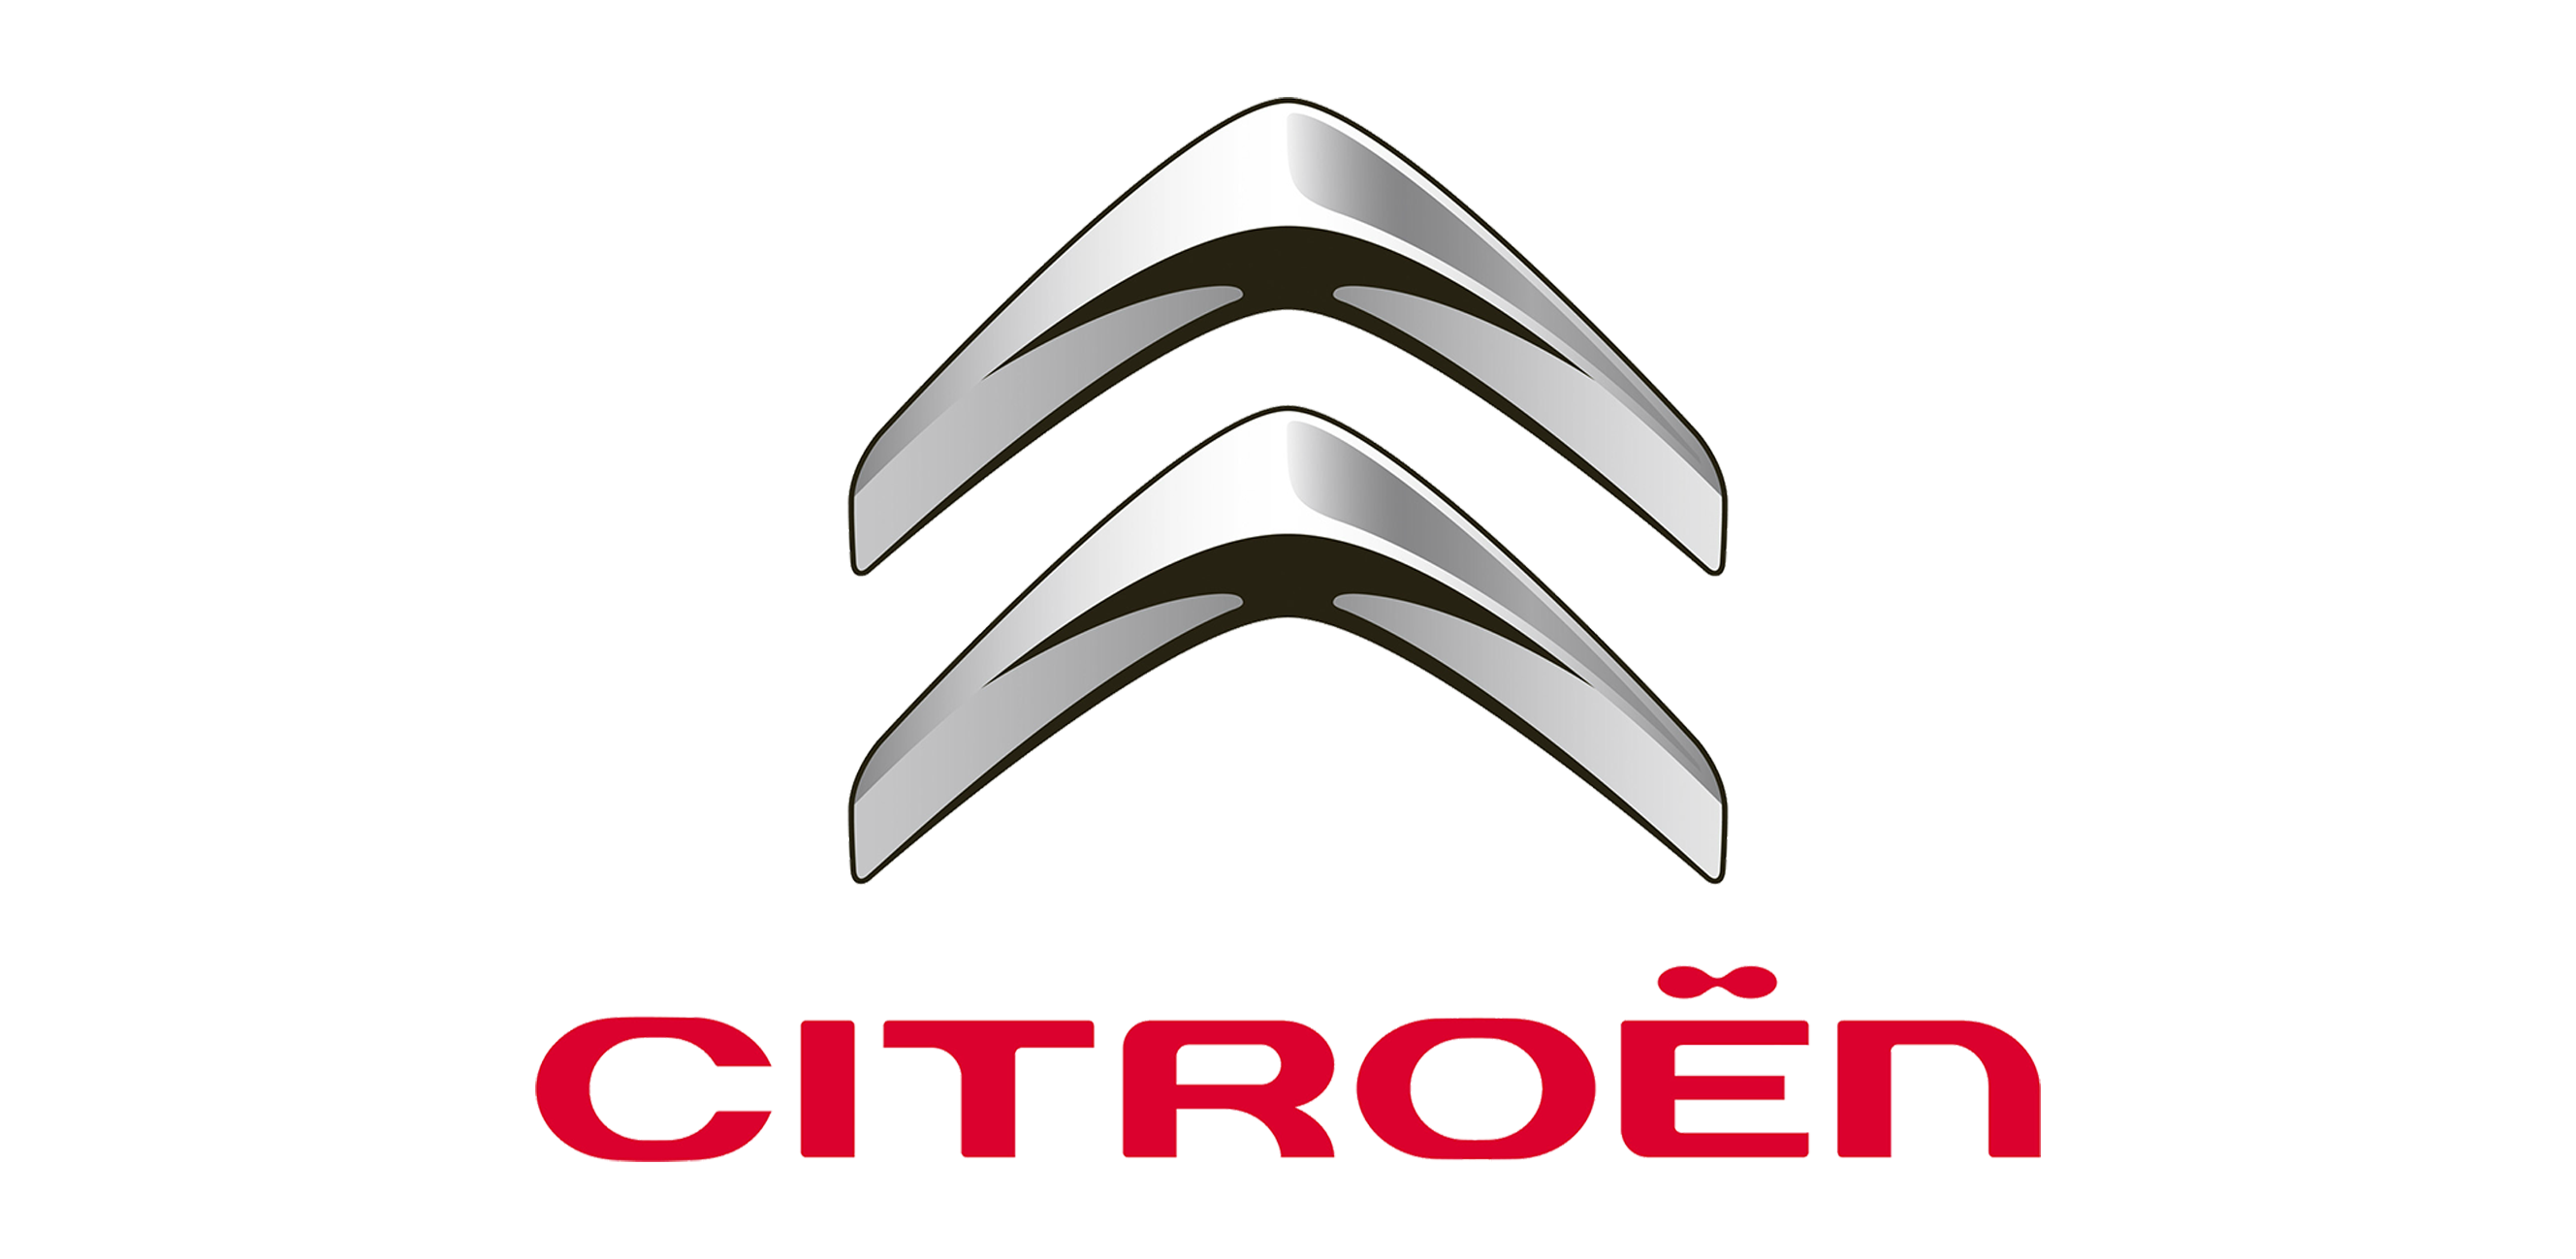 Citroen-1